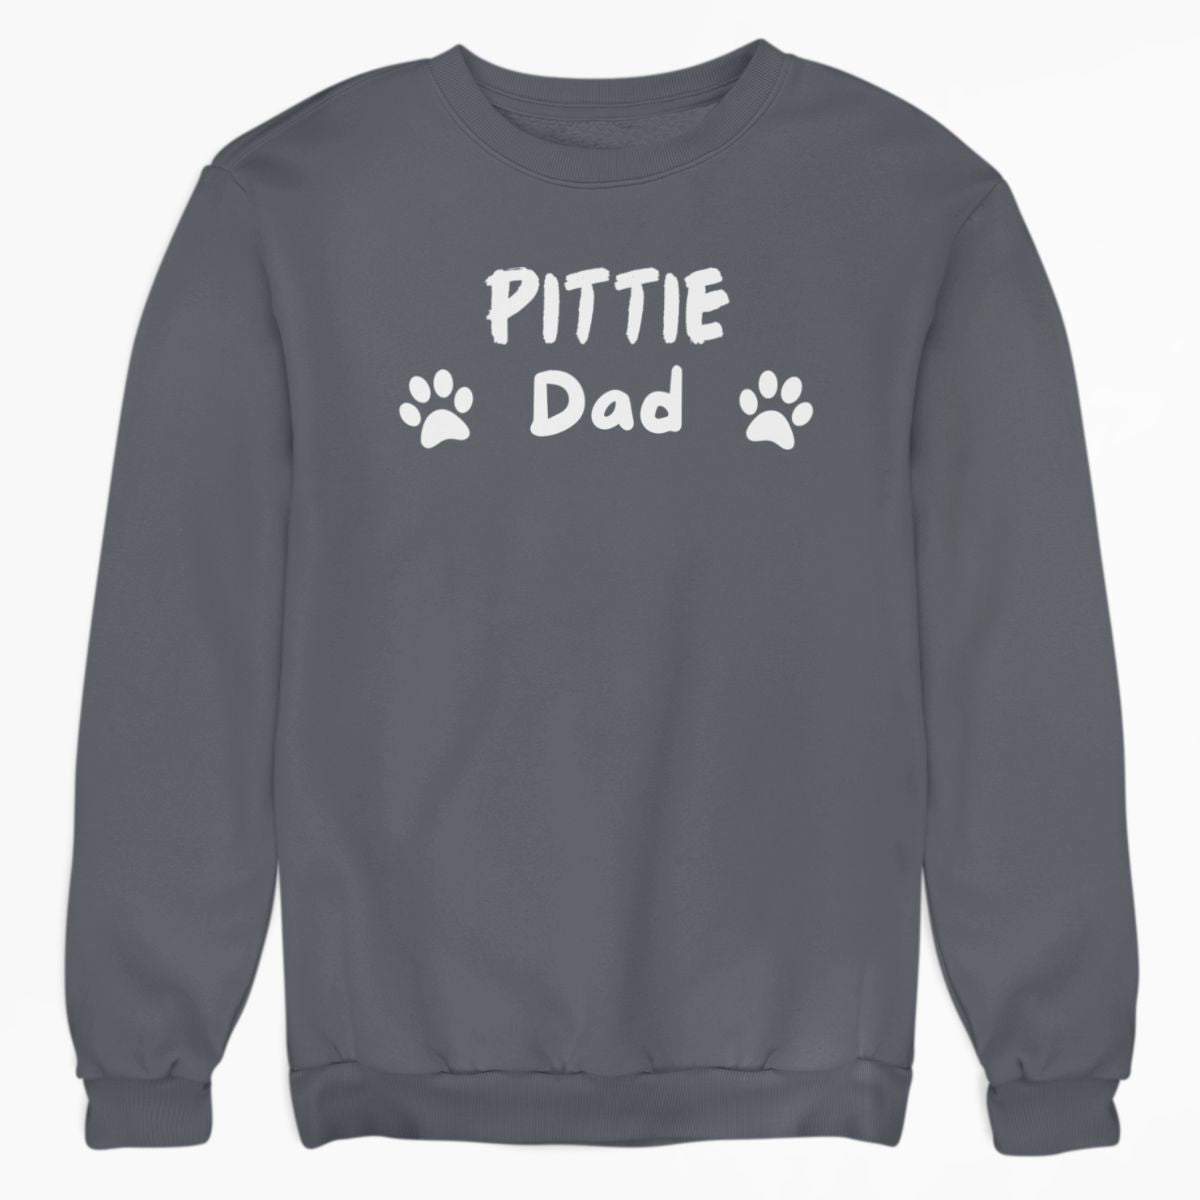 Pittie Dad Shirt